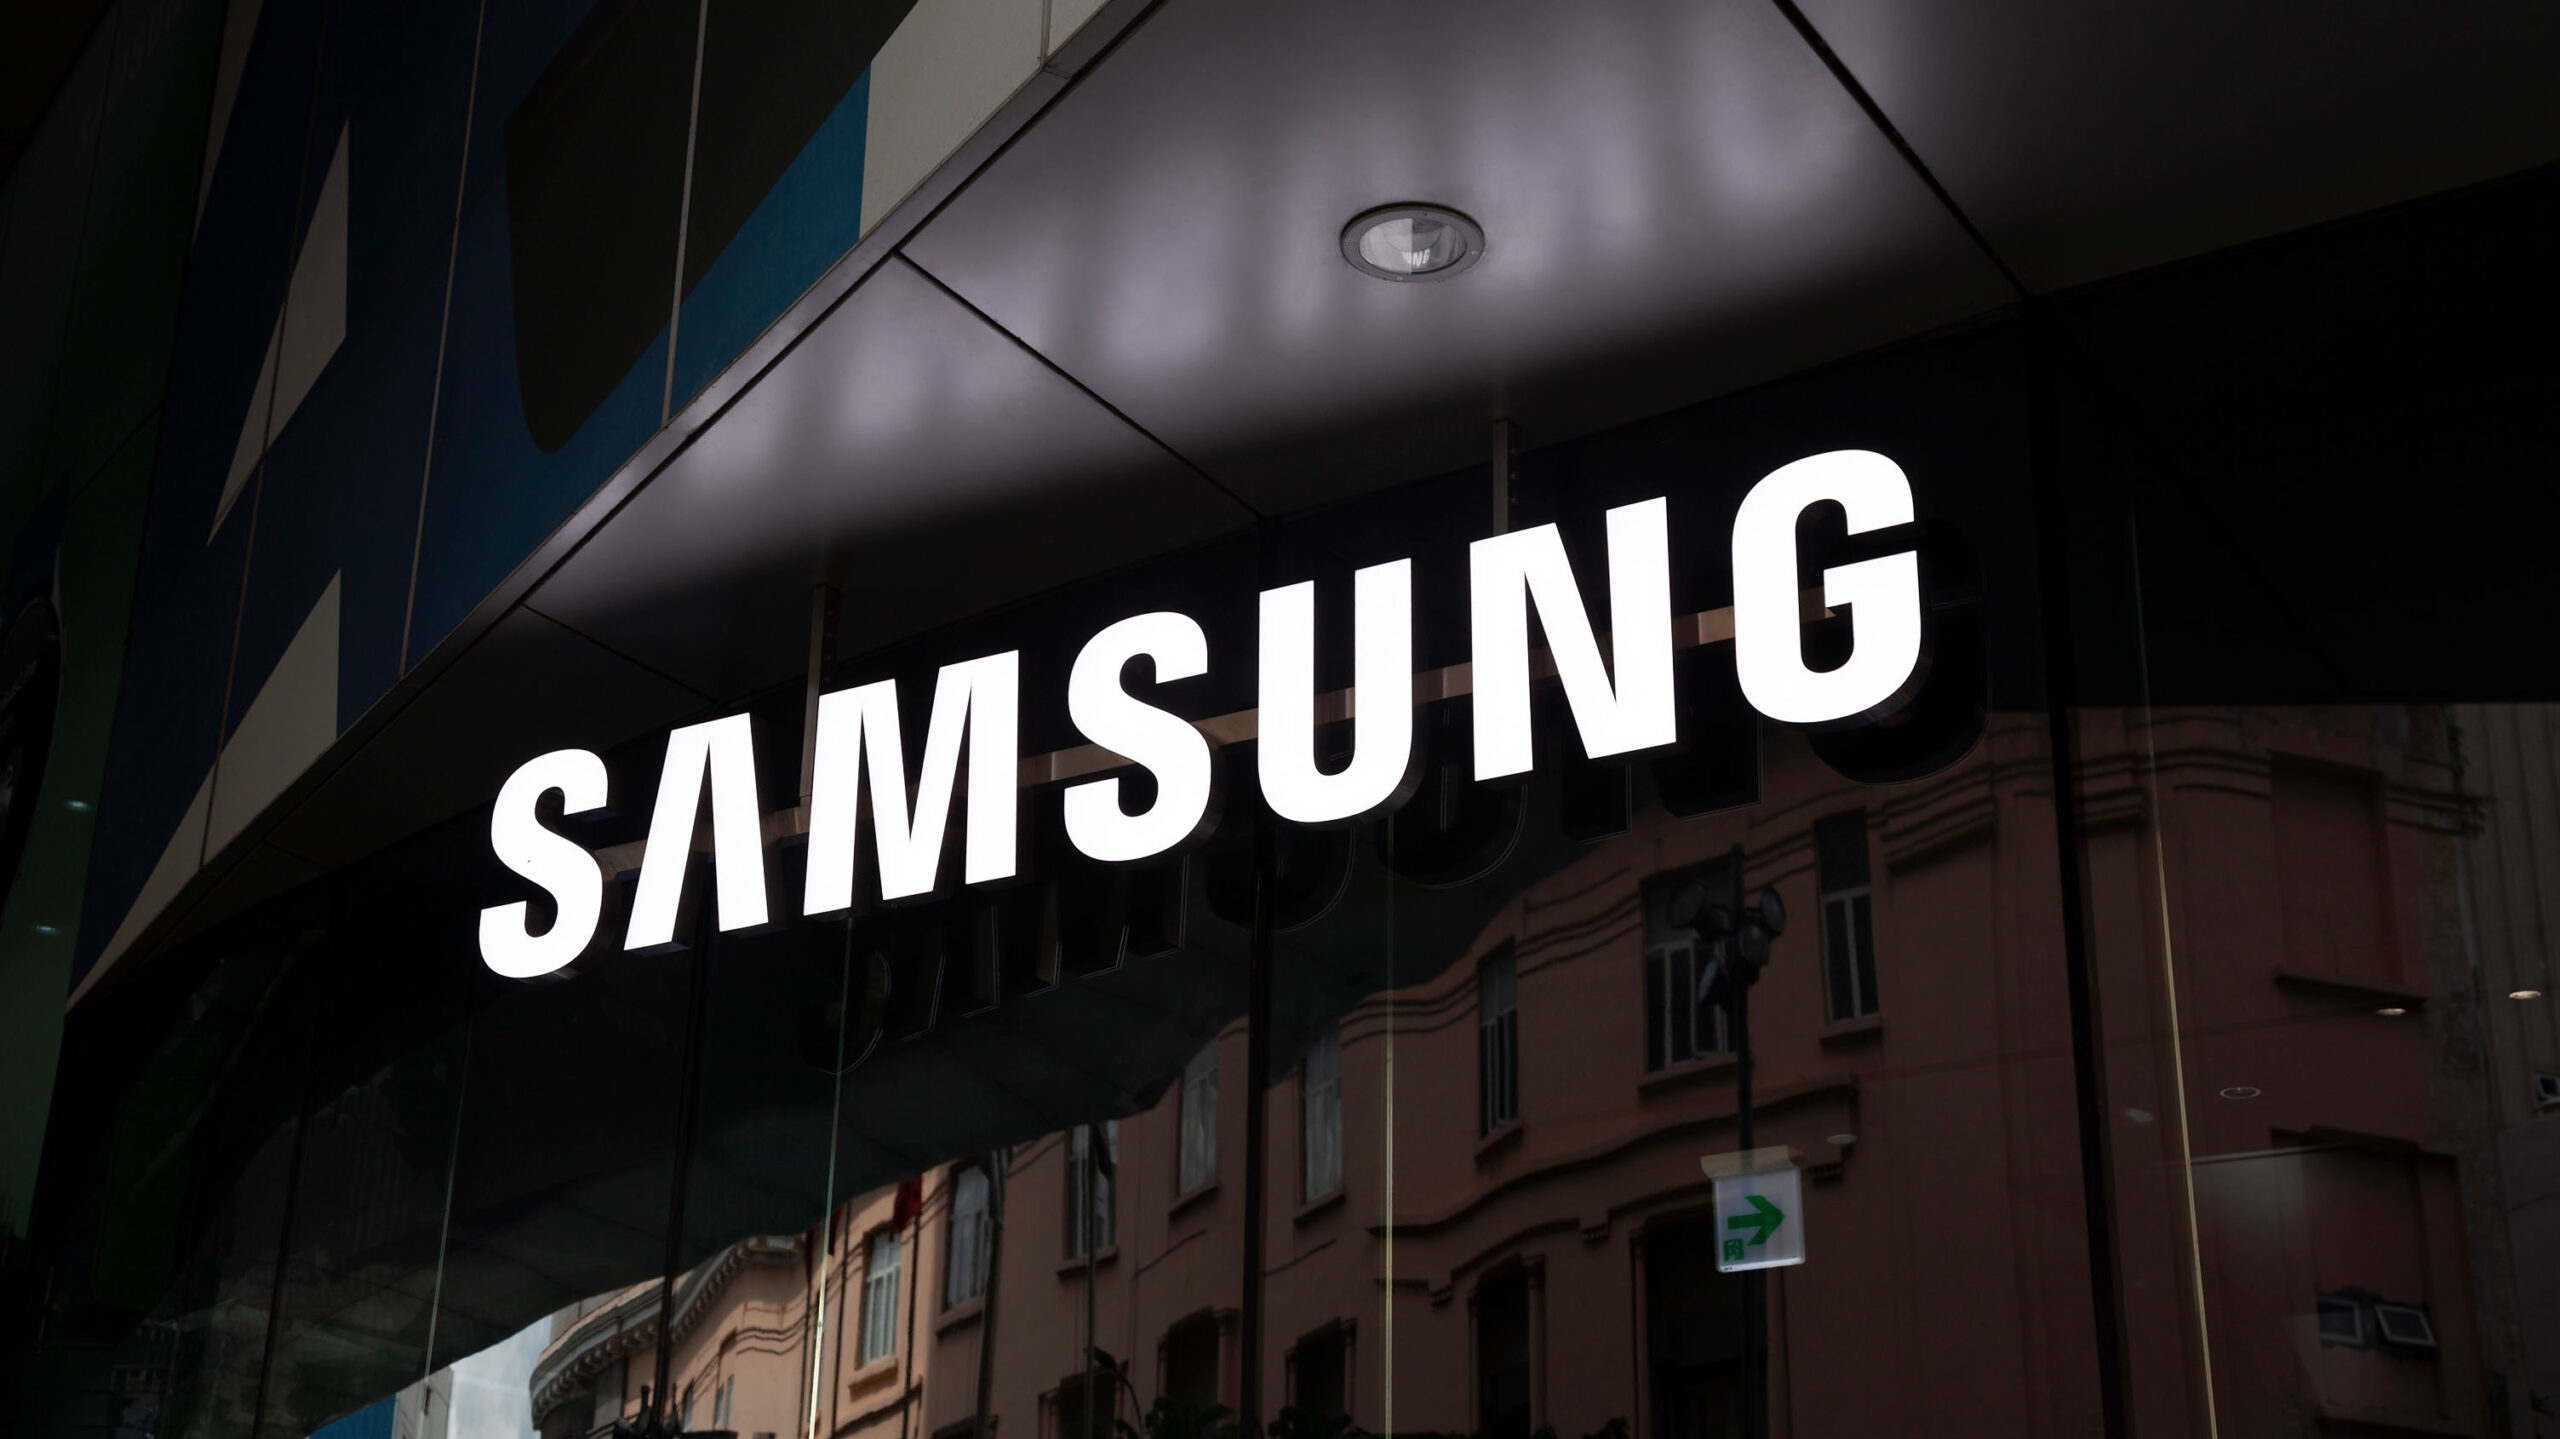 Samsung's nieuwste smartphones uit de A-serie richten zich op geavanceerde beveiliging